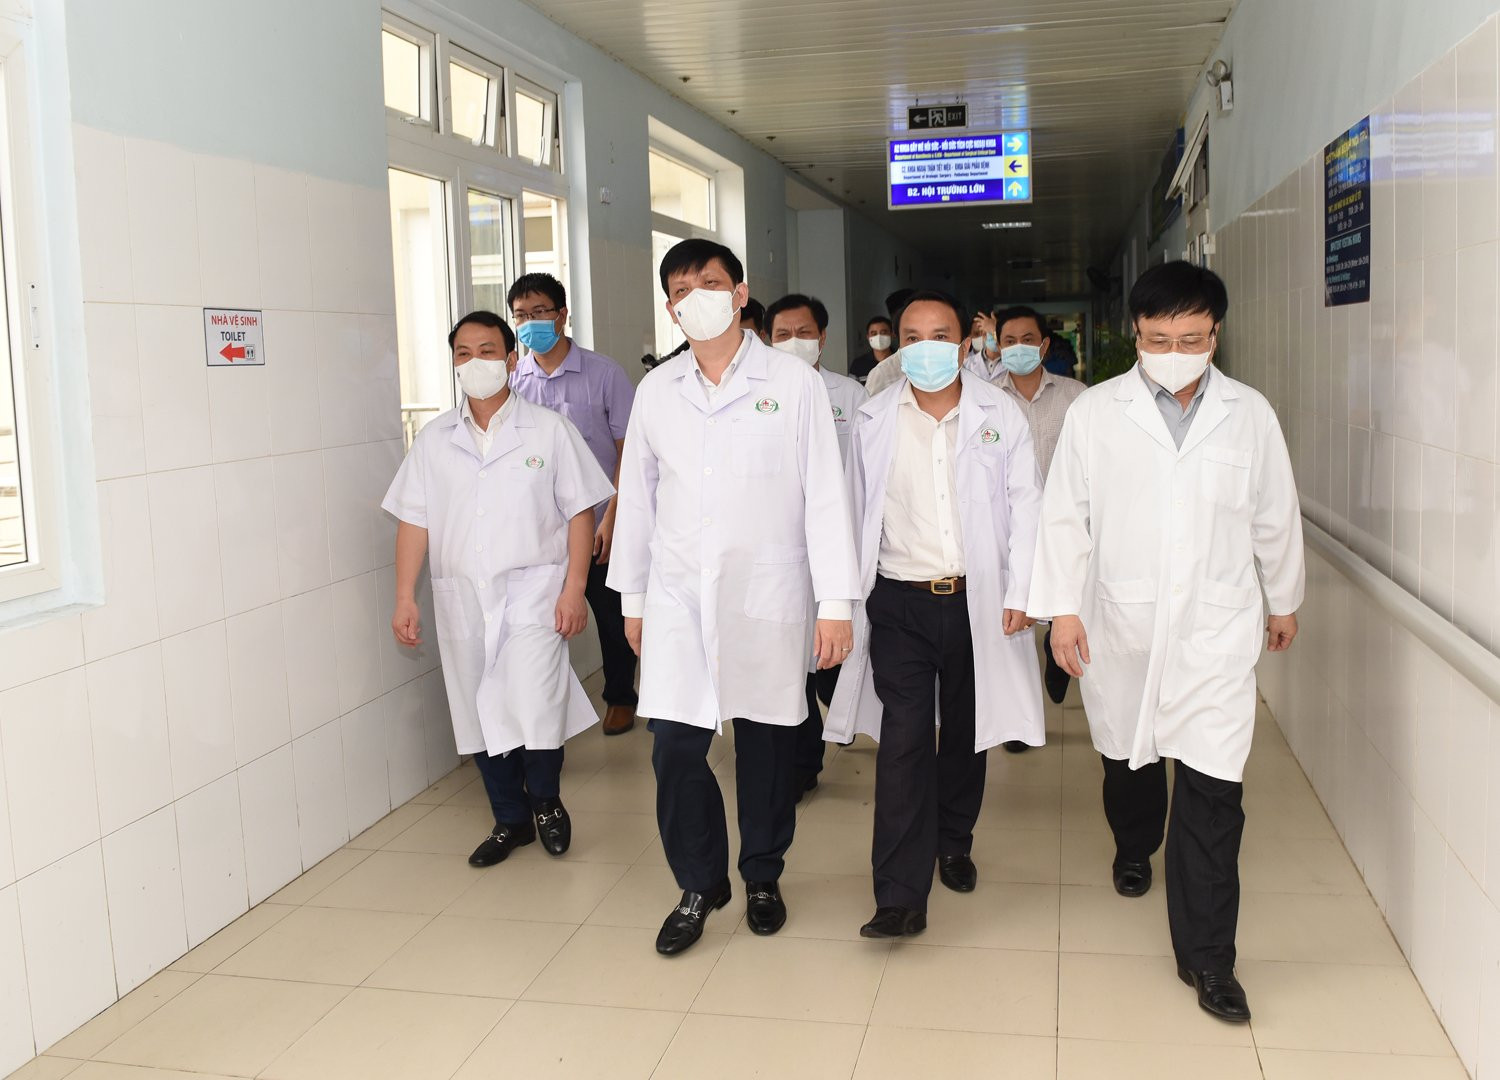 Bộ trưởng Bộ Y tế Nguyễn Thanh Long và Ban chỉ đạo Phòng chống dịch COVID-19 tỉnh Nghệ An kiểm tra tại Bệnh viện Hữu nghị Đa khoa Nghệ An. Ảnh: Thành Cường